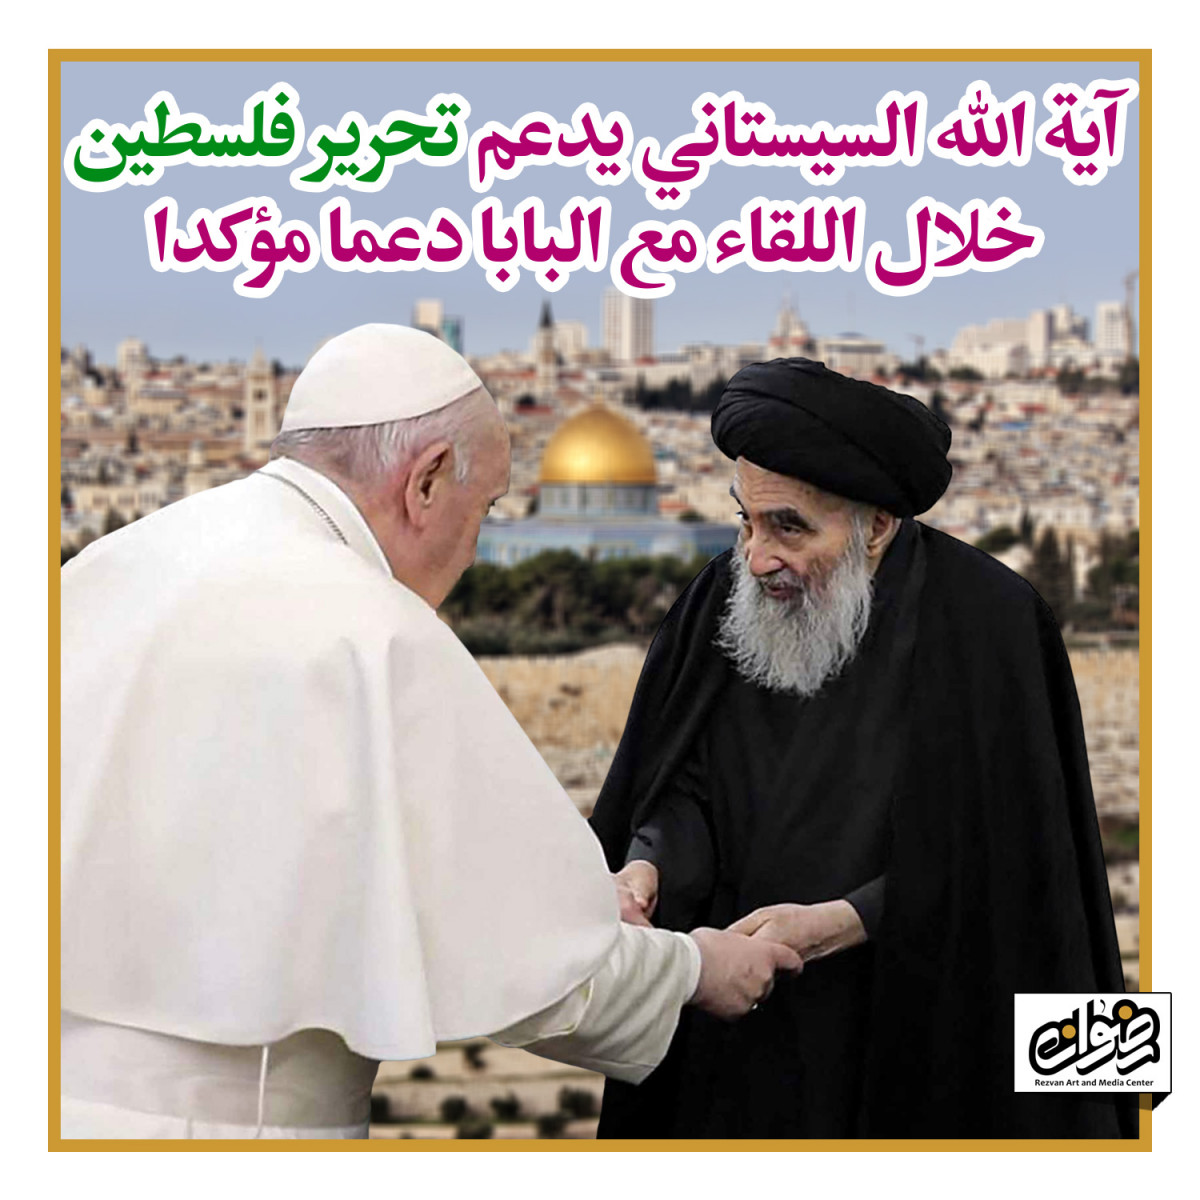 آية الله السيستاني يدعم تحرير فلسطين